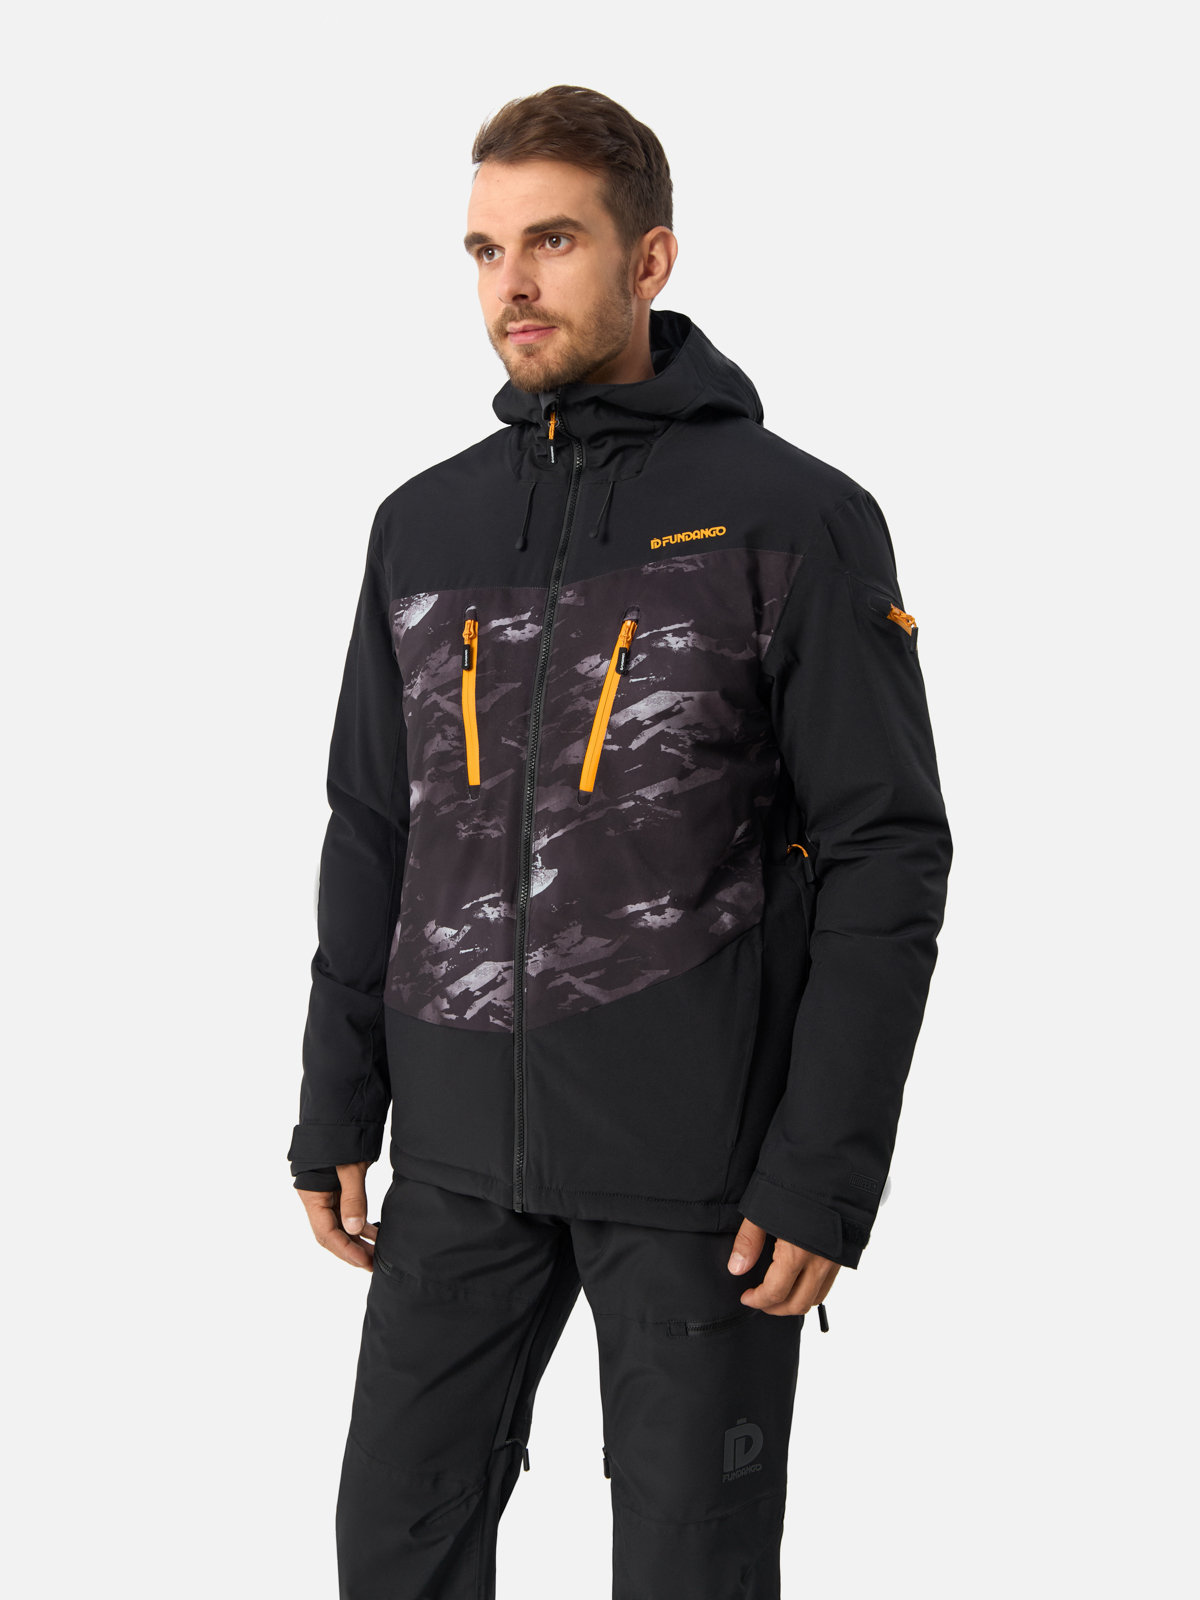 Куртка Fundango для мужчин, горнолыжная, размер L, 1QAD102, чёрная, камуфляж